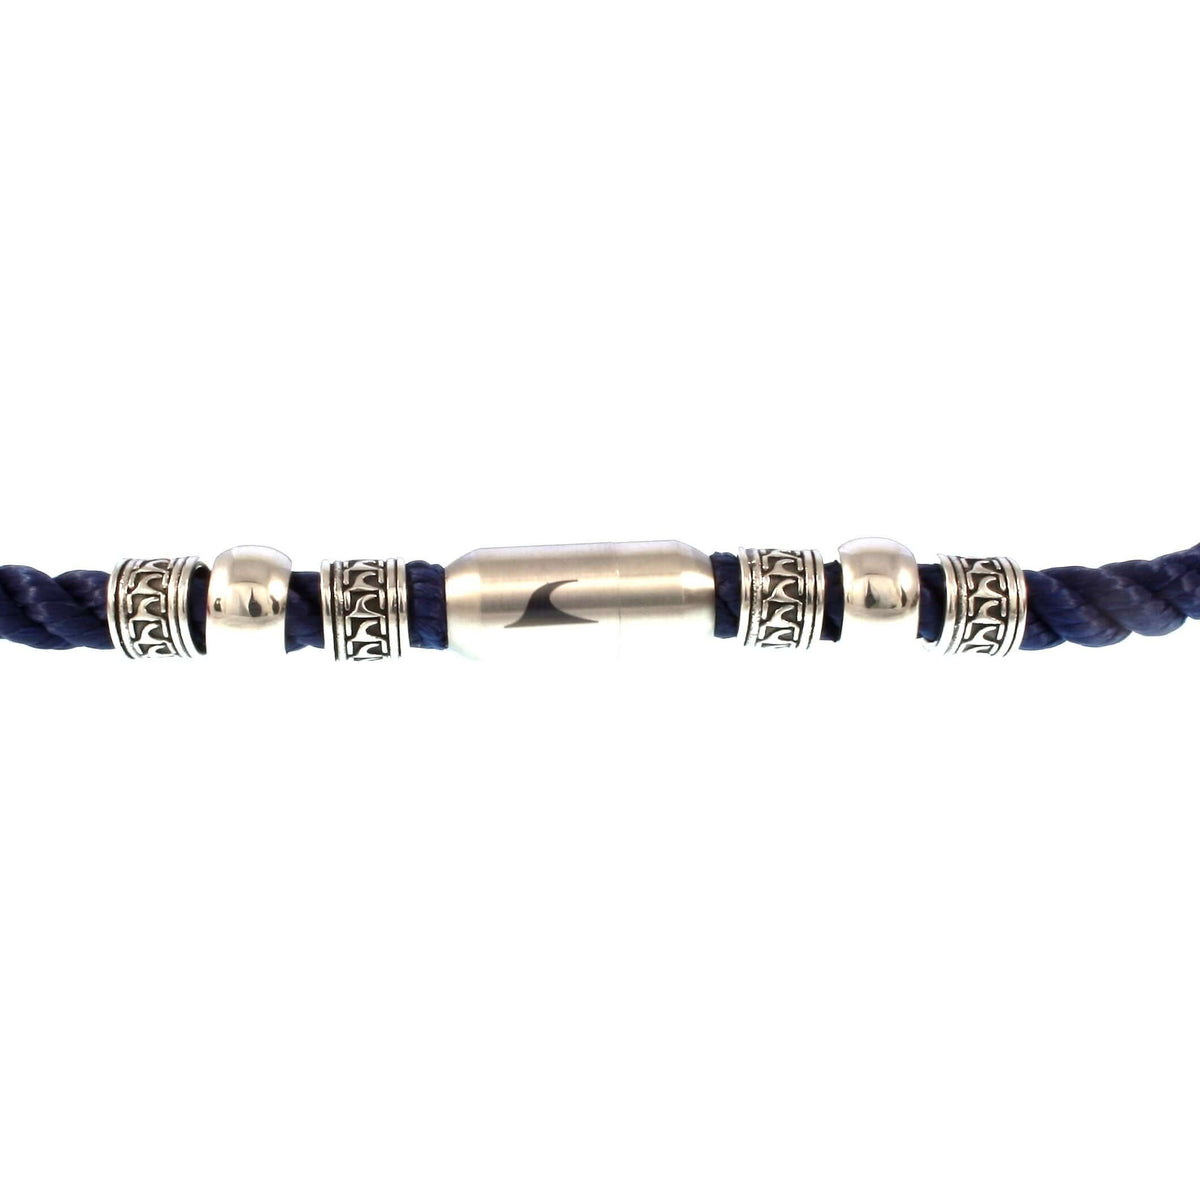 Herren-leder-halskette-damen-atoll-blau-silber-geflochten-Edelstahlverschluss-detail-wavepirate-shop-z8